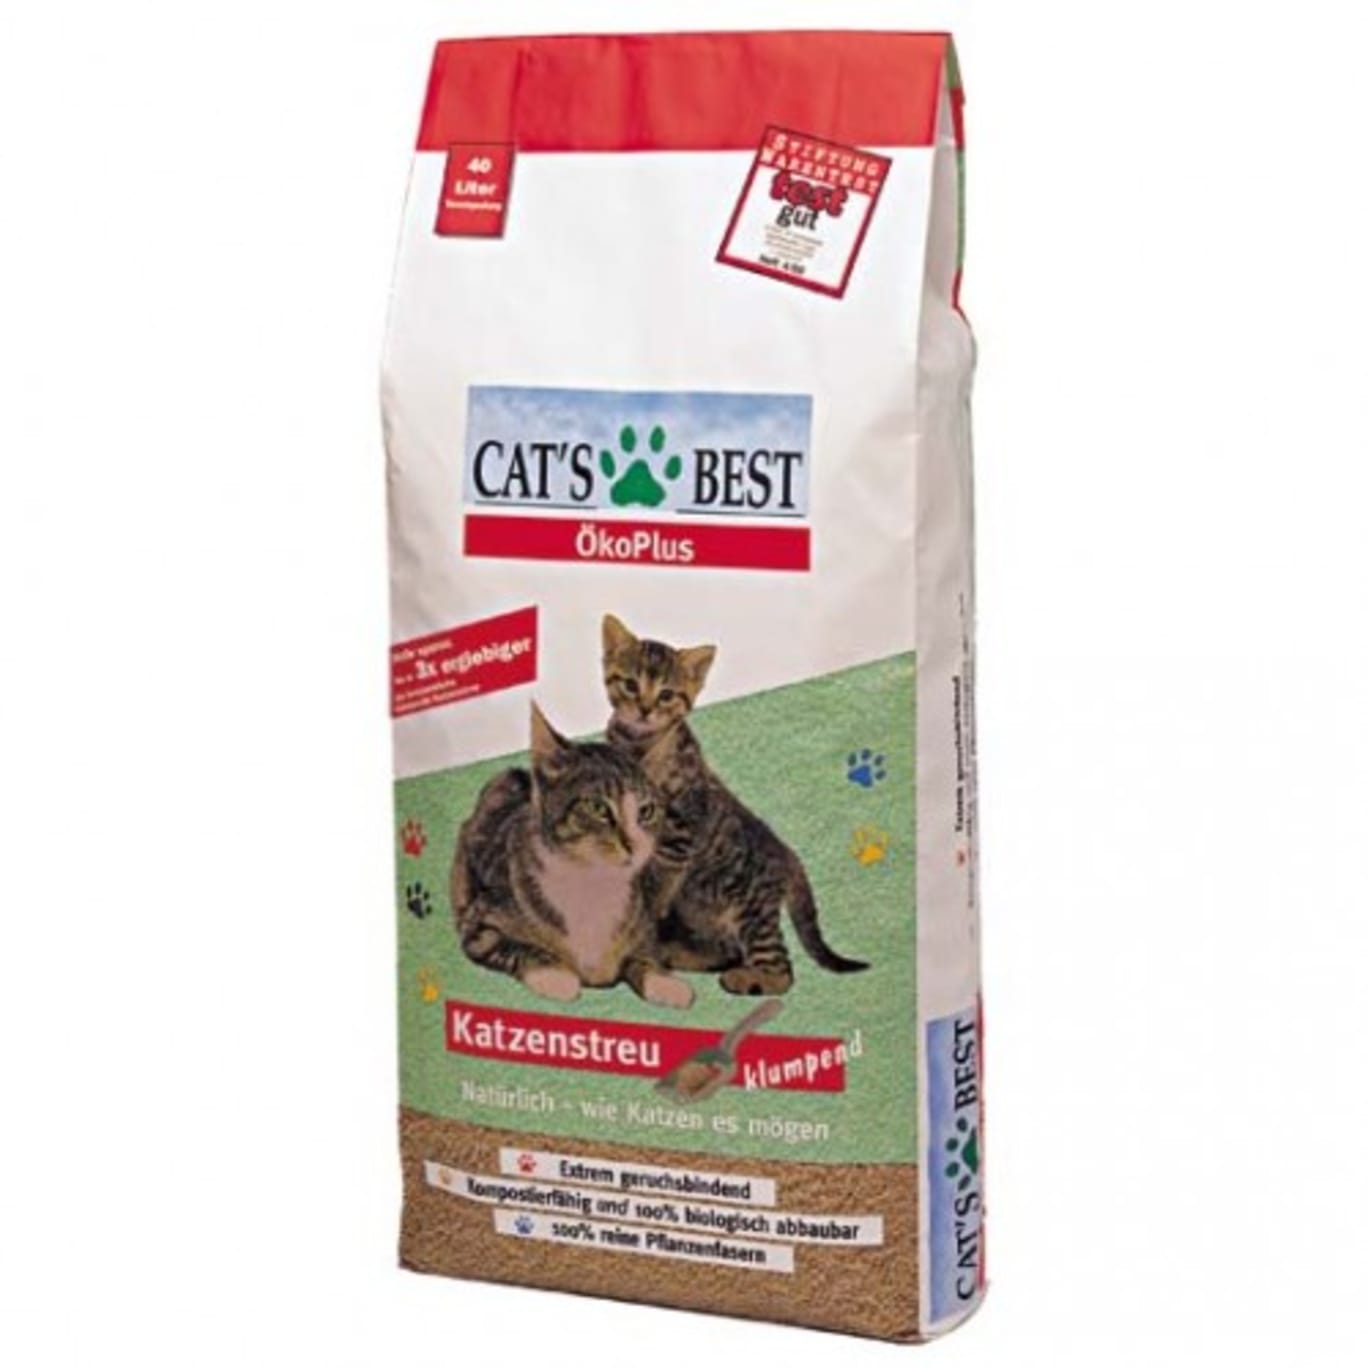 Erase easily curve Cat's Best Oko Plus 40 L, Cat`s best, Oko Plus Cat's Best - Asternut  ecologic litiera - catshop.ro